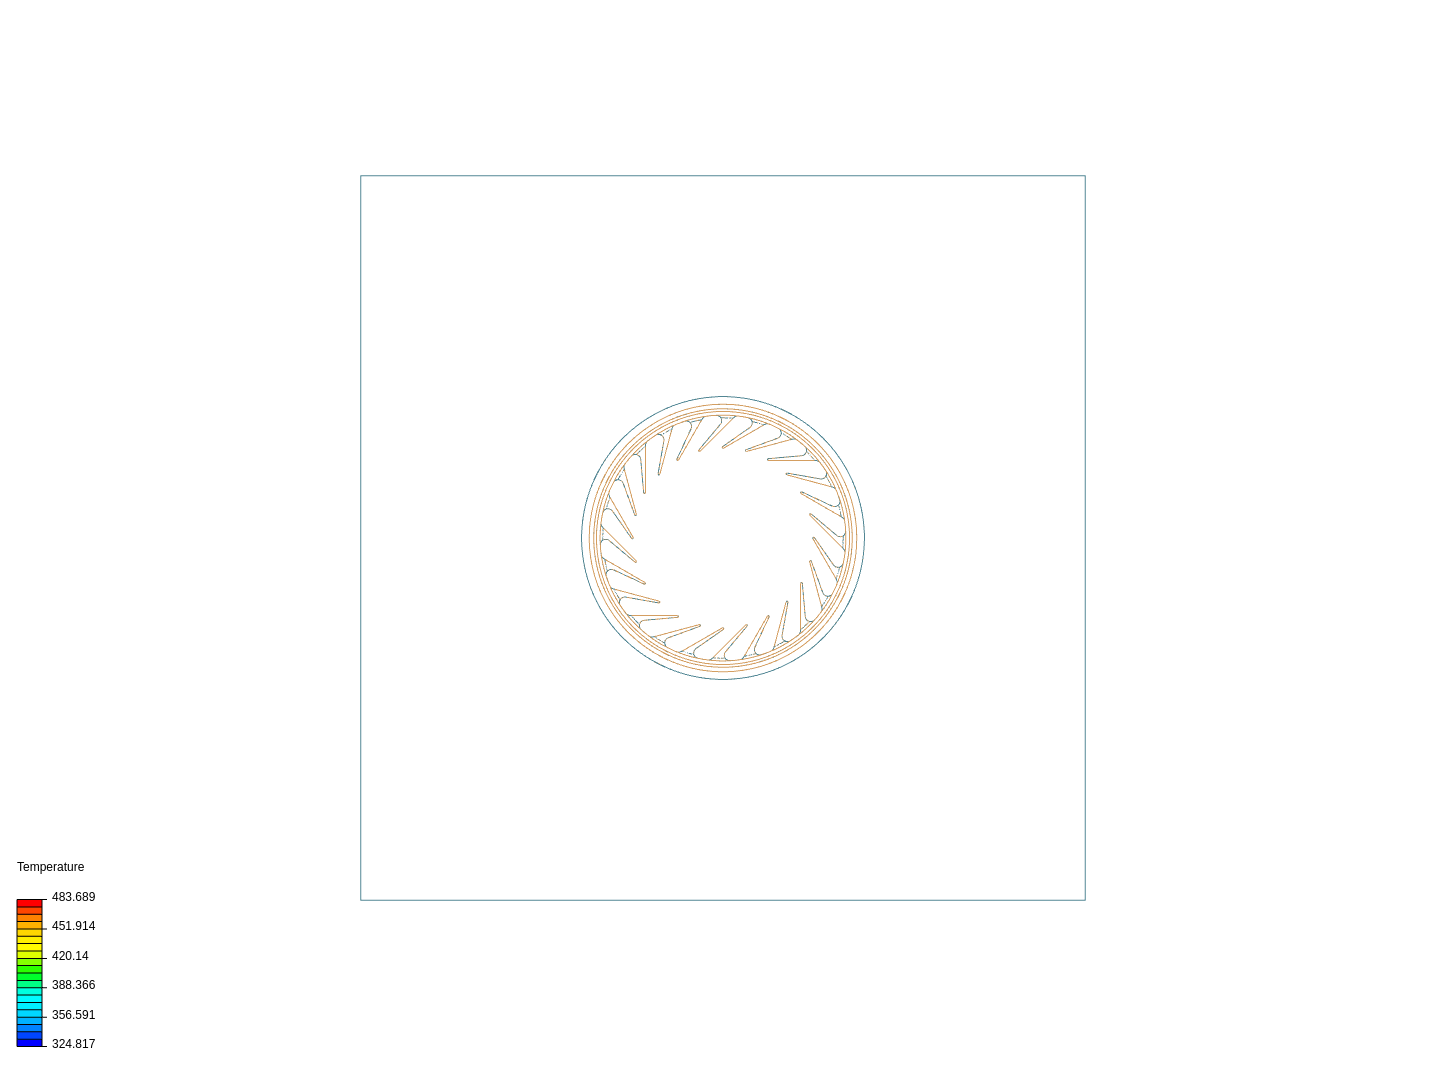 Drum1-spiral(2) image